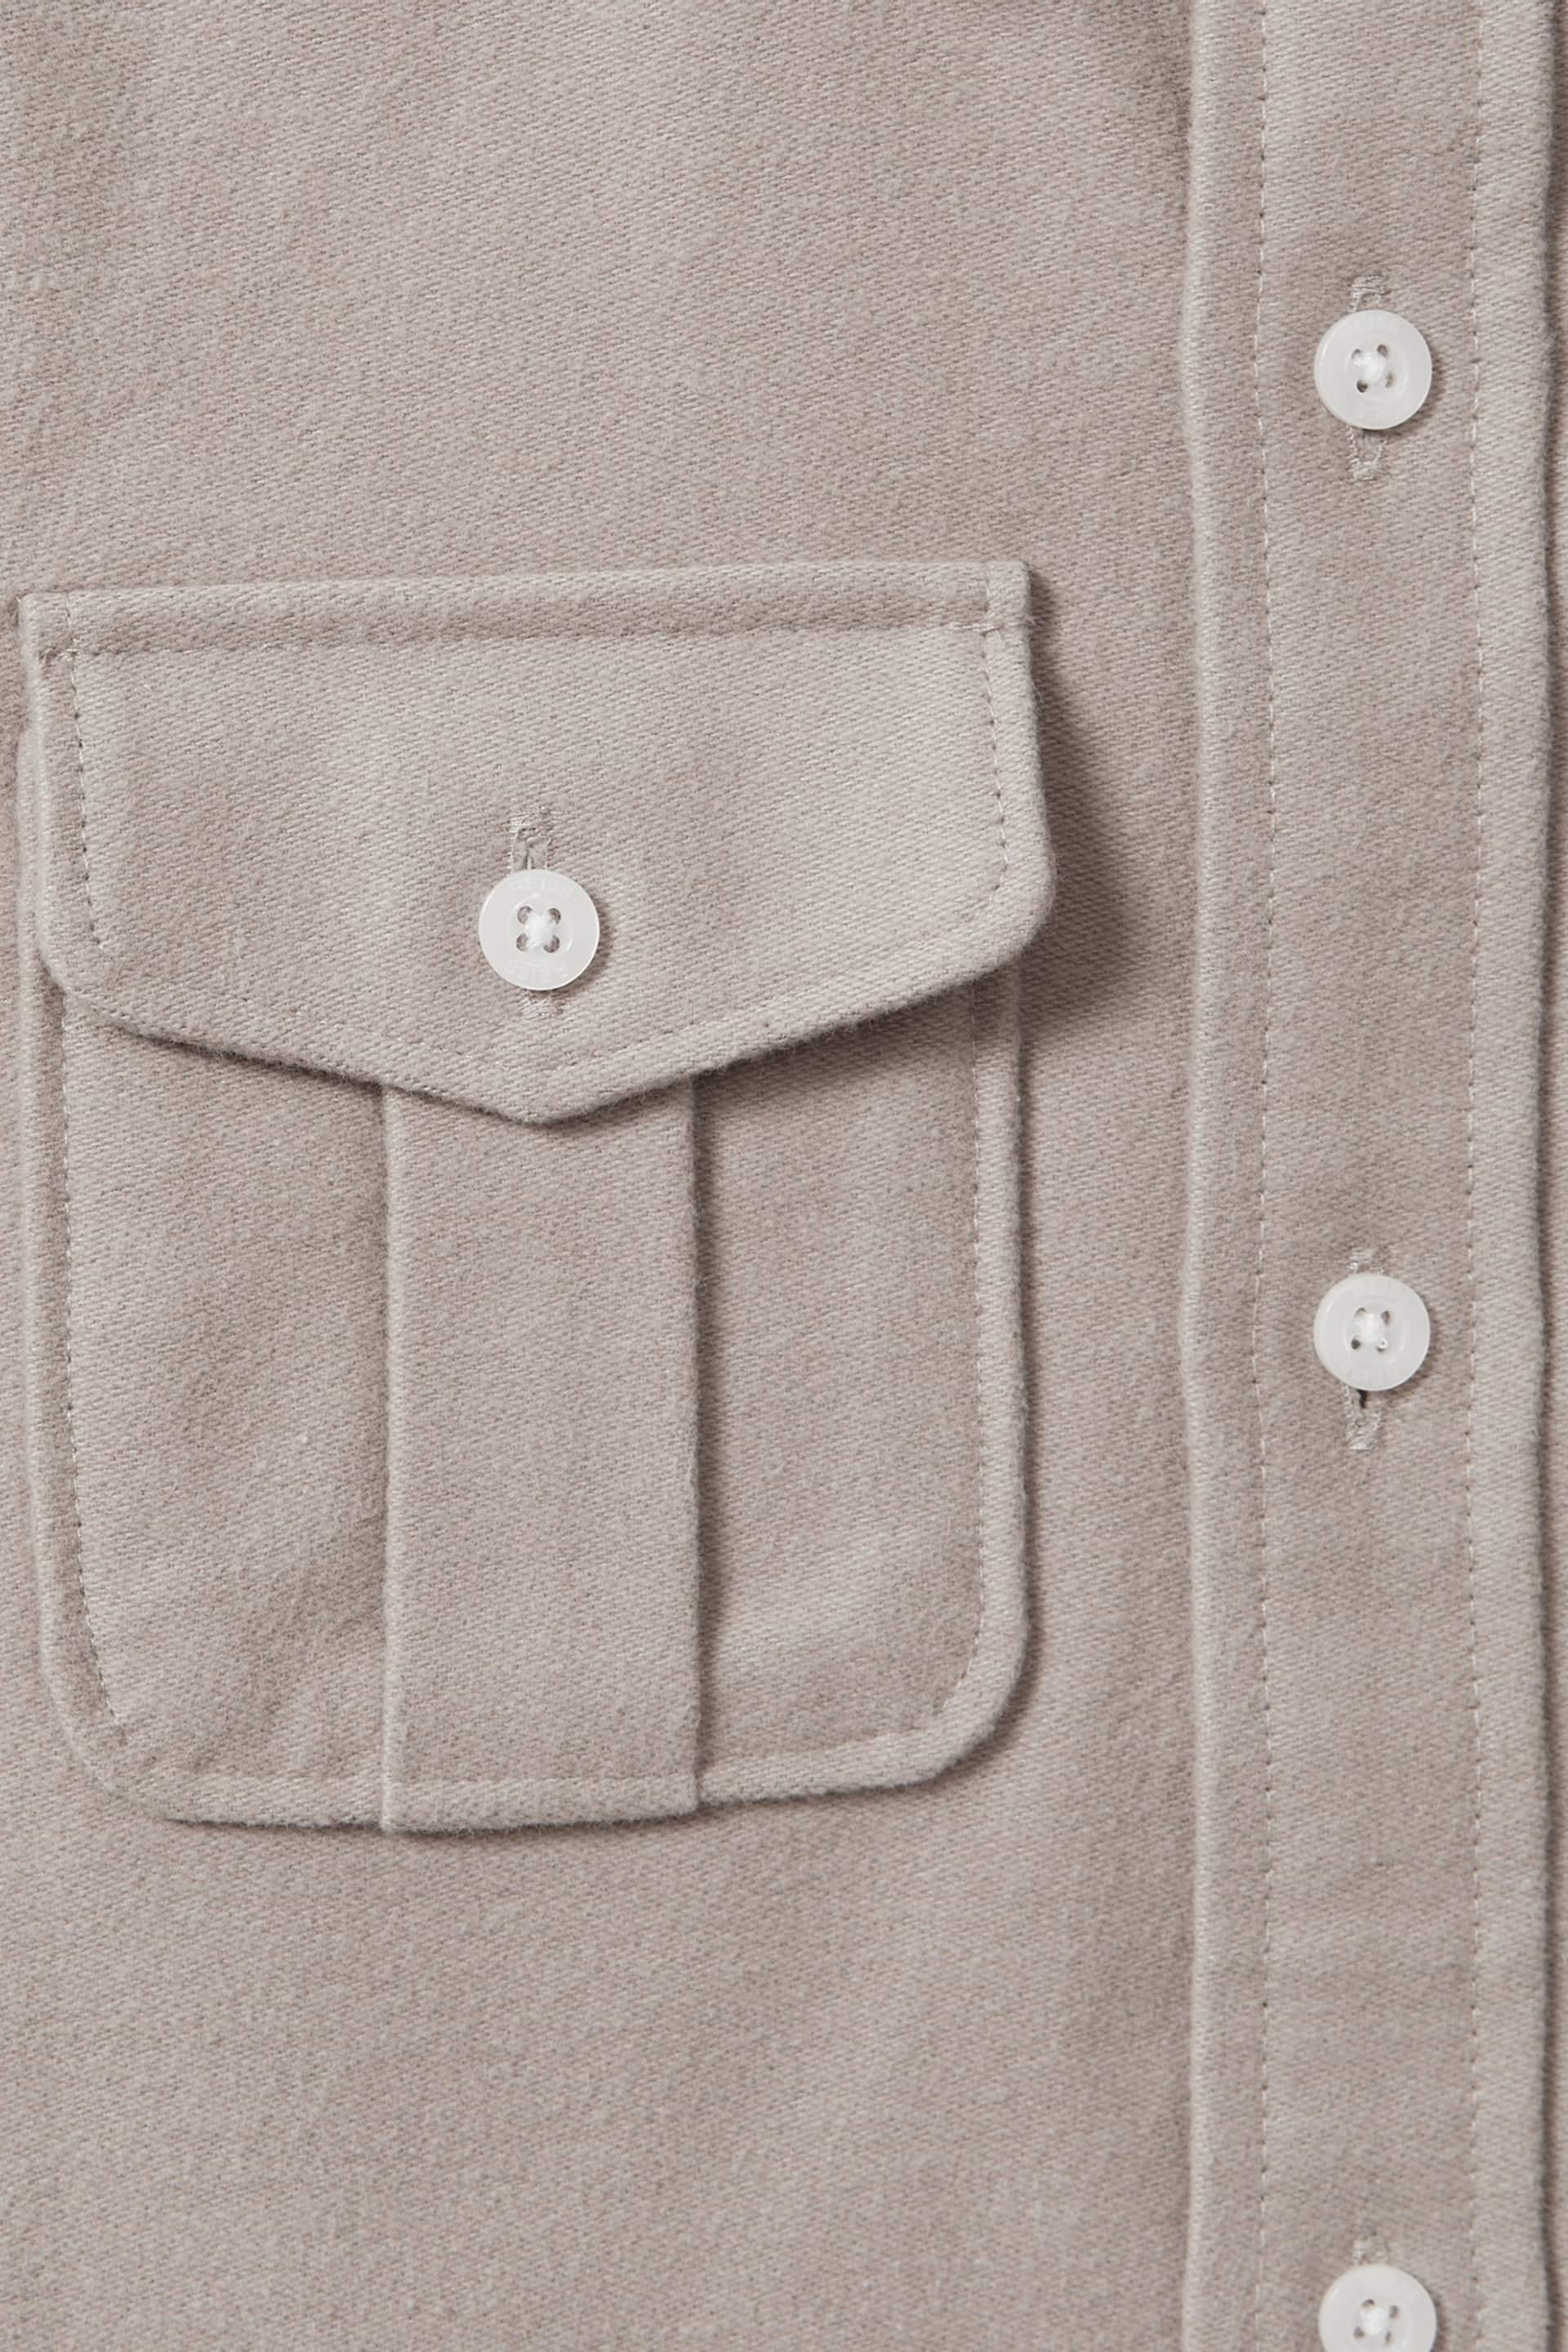 Reiss Oatmeal Melange Thomas Junior Brushed Cotton Patch Pocket Overshirt - Image 6 of 6